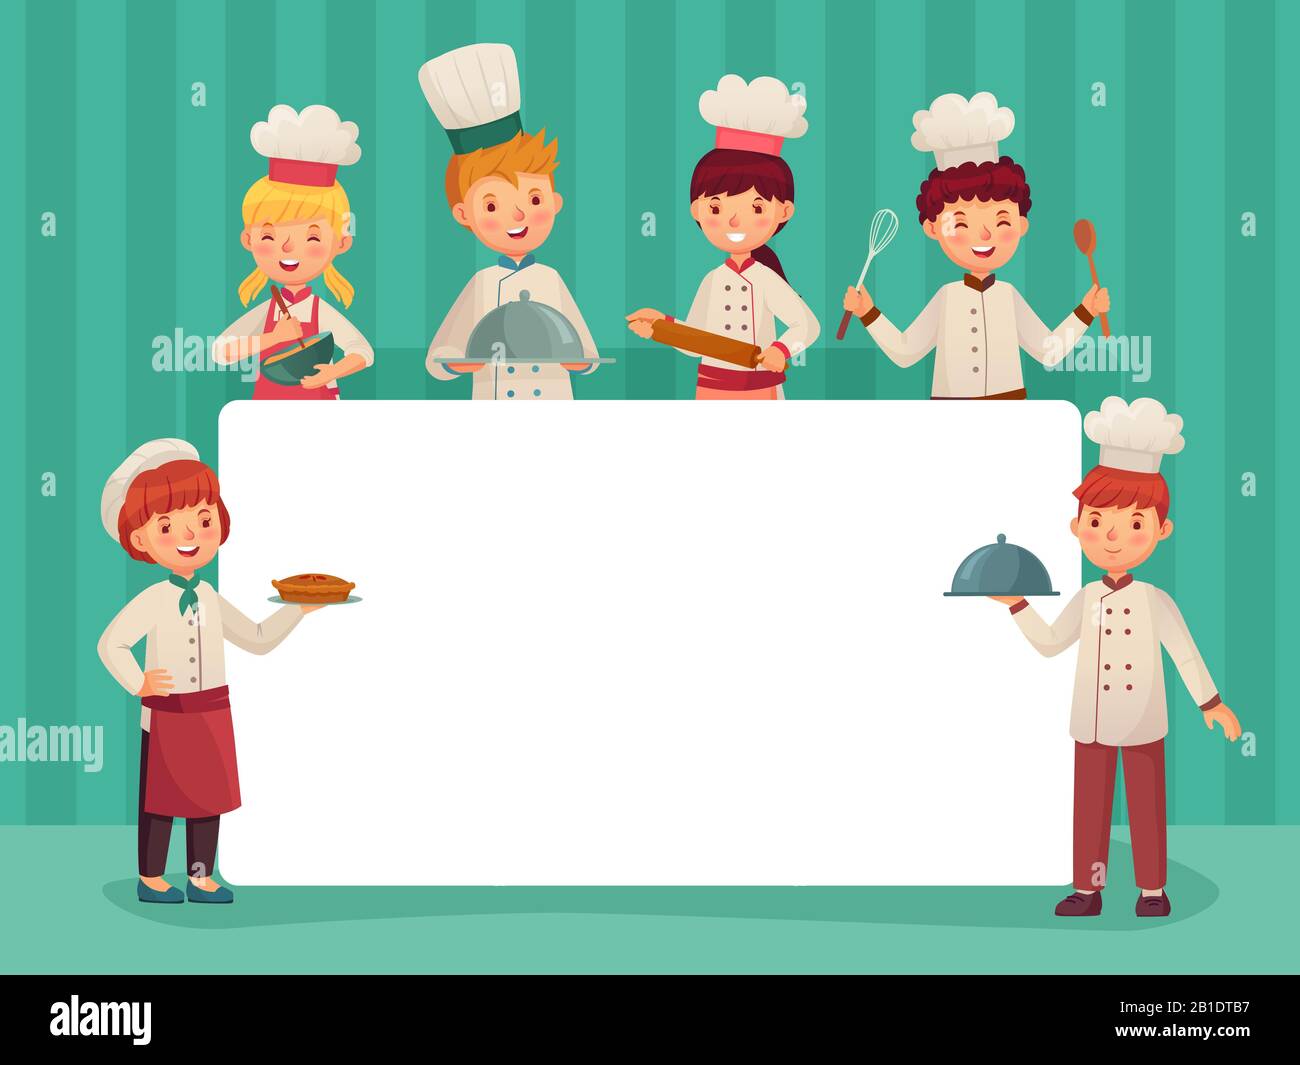 Cadre de chefs pour enfants. Les enfants cuisiniers, les petits chefs cuisiniers cuisine et restaurant cuisine étudiants dessin vectoriel de dessin animé Illustration de Vecteur